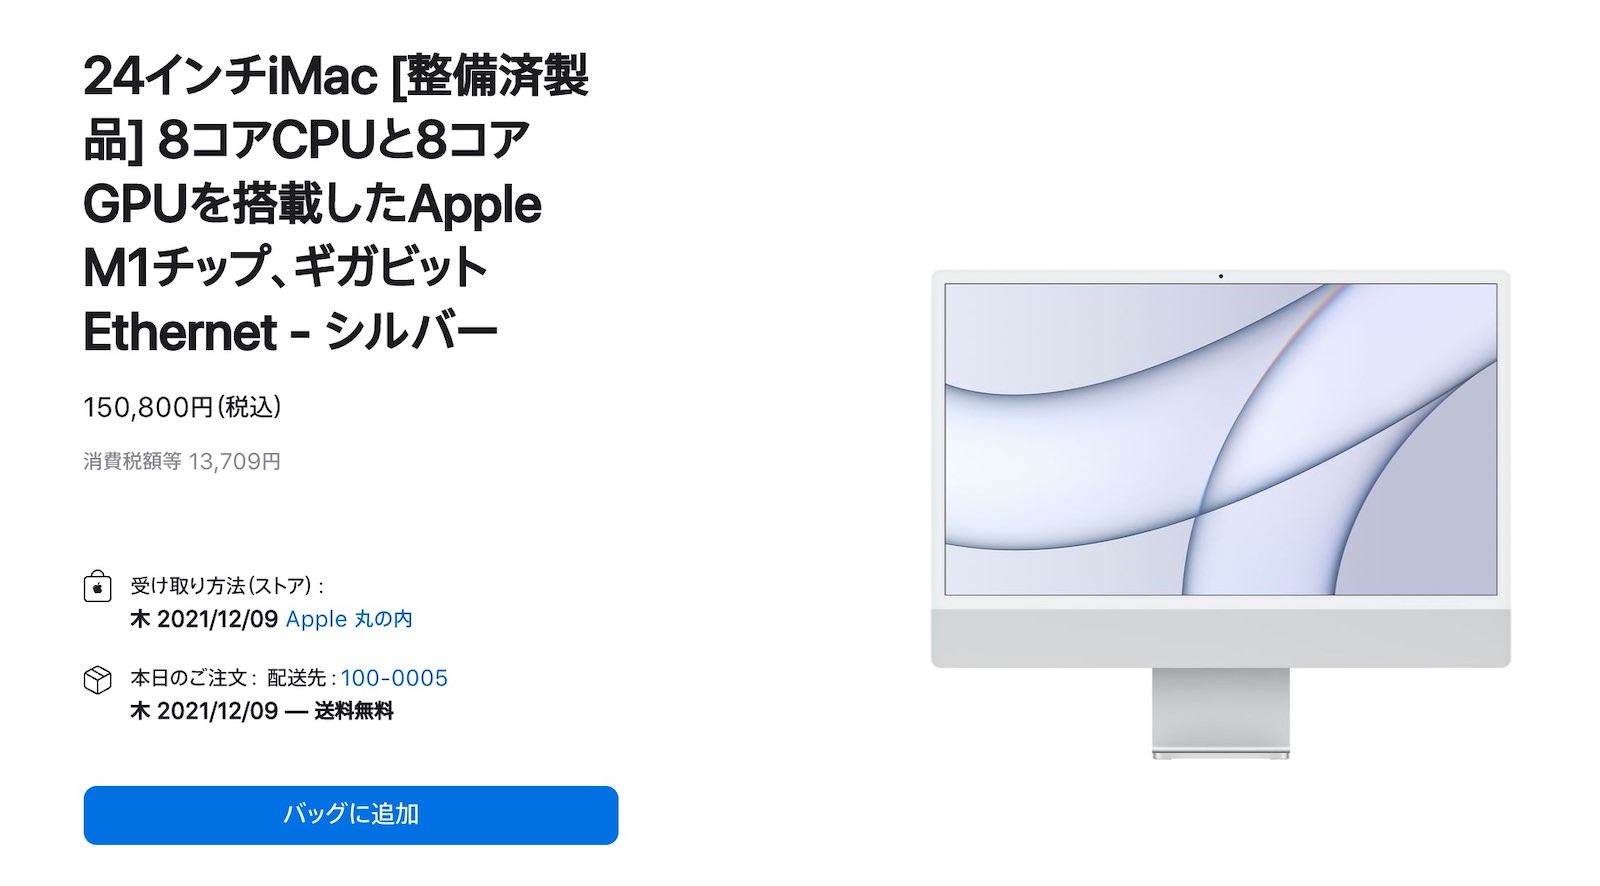 Mac-Refurbished-model-2021-12-07-2.jpg